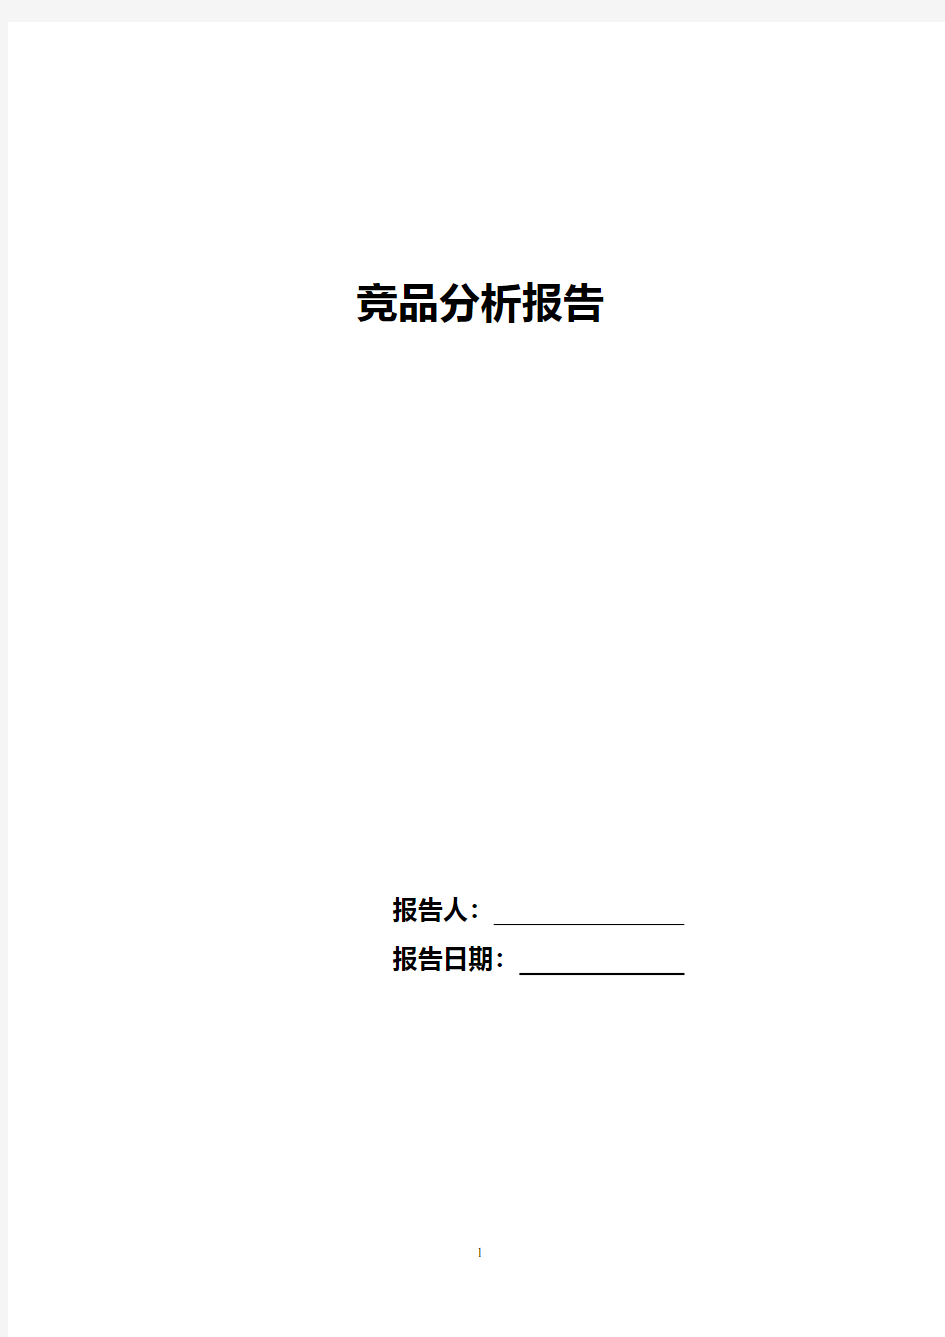 竞品分析报告模板.pdf